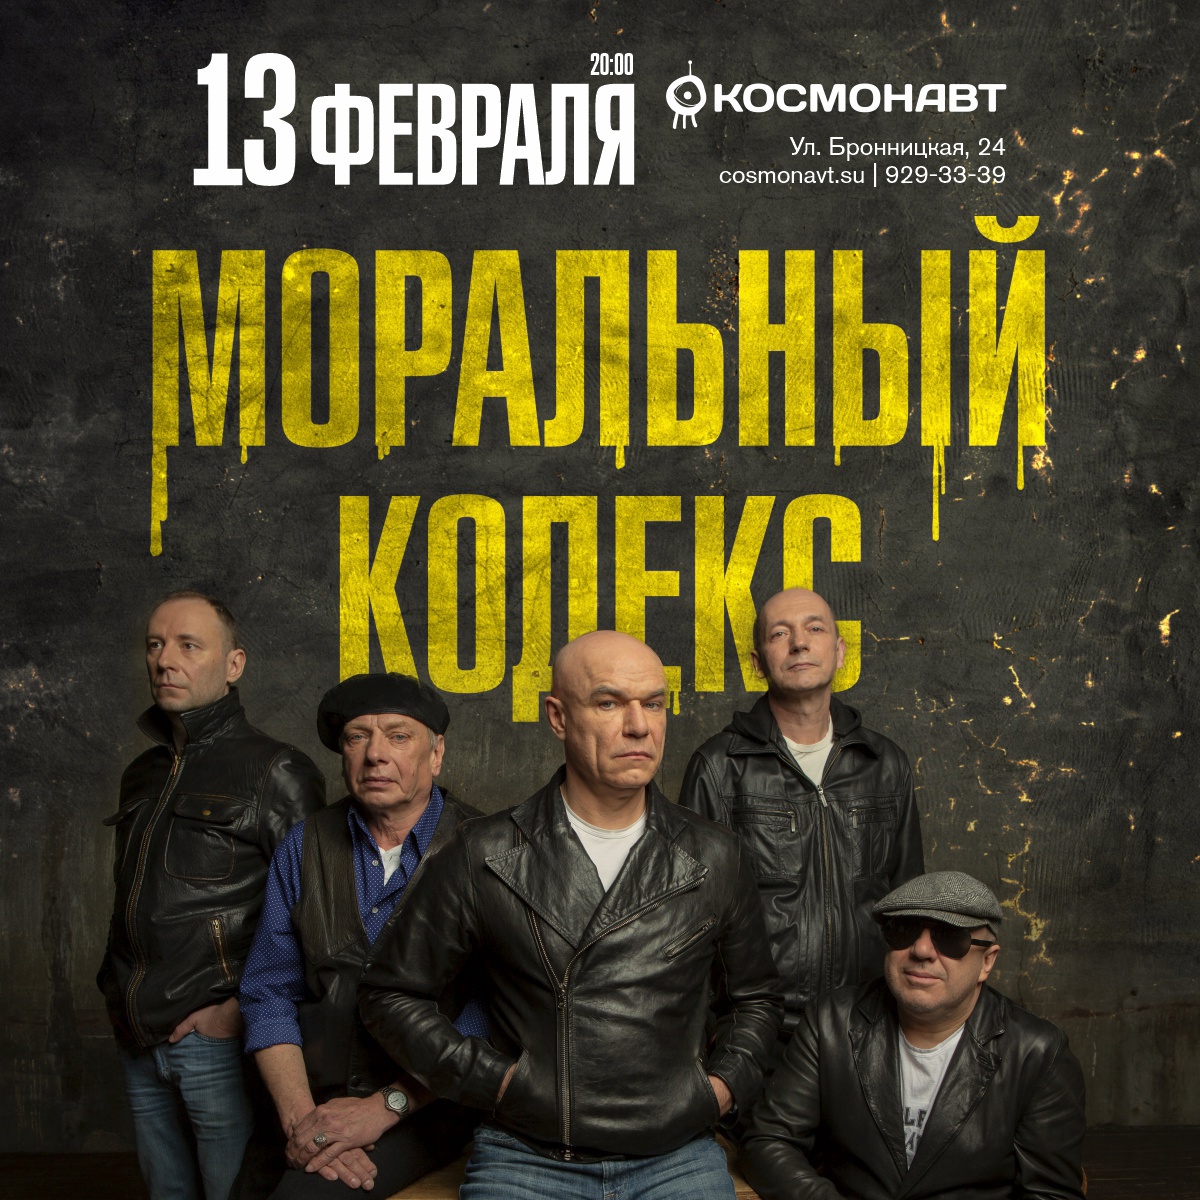 Группа «Моральный кодекс» сыграет в Петербурге концерт, посвященный сразу двум прошедшим юбилеям